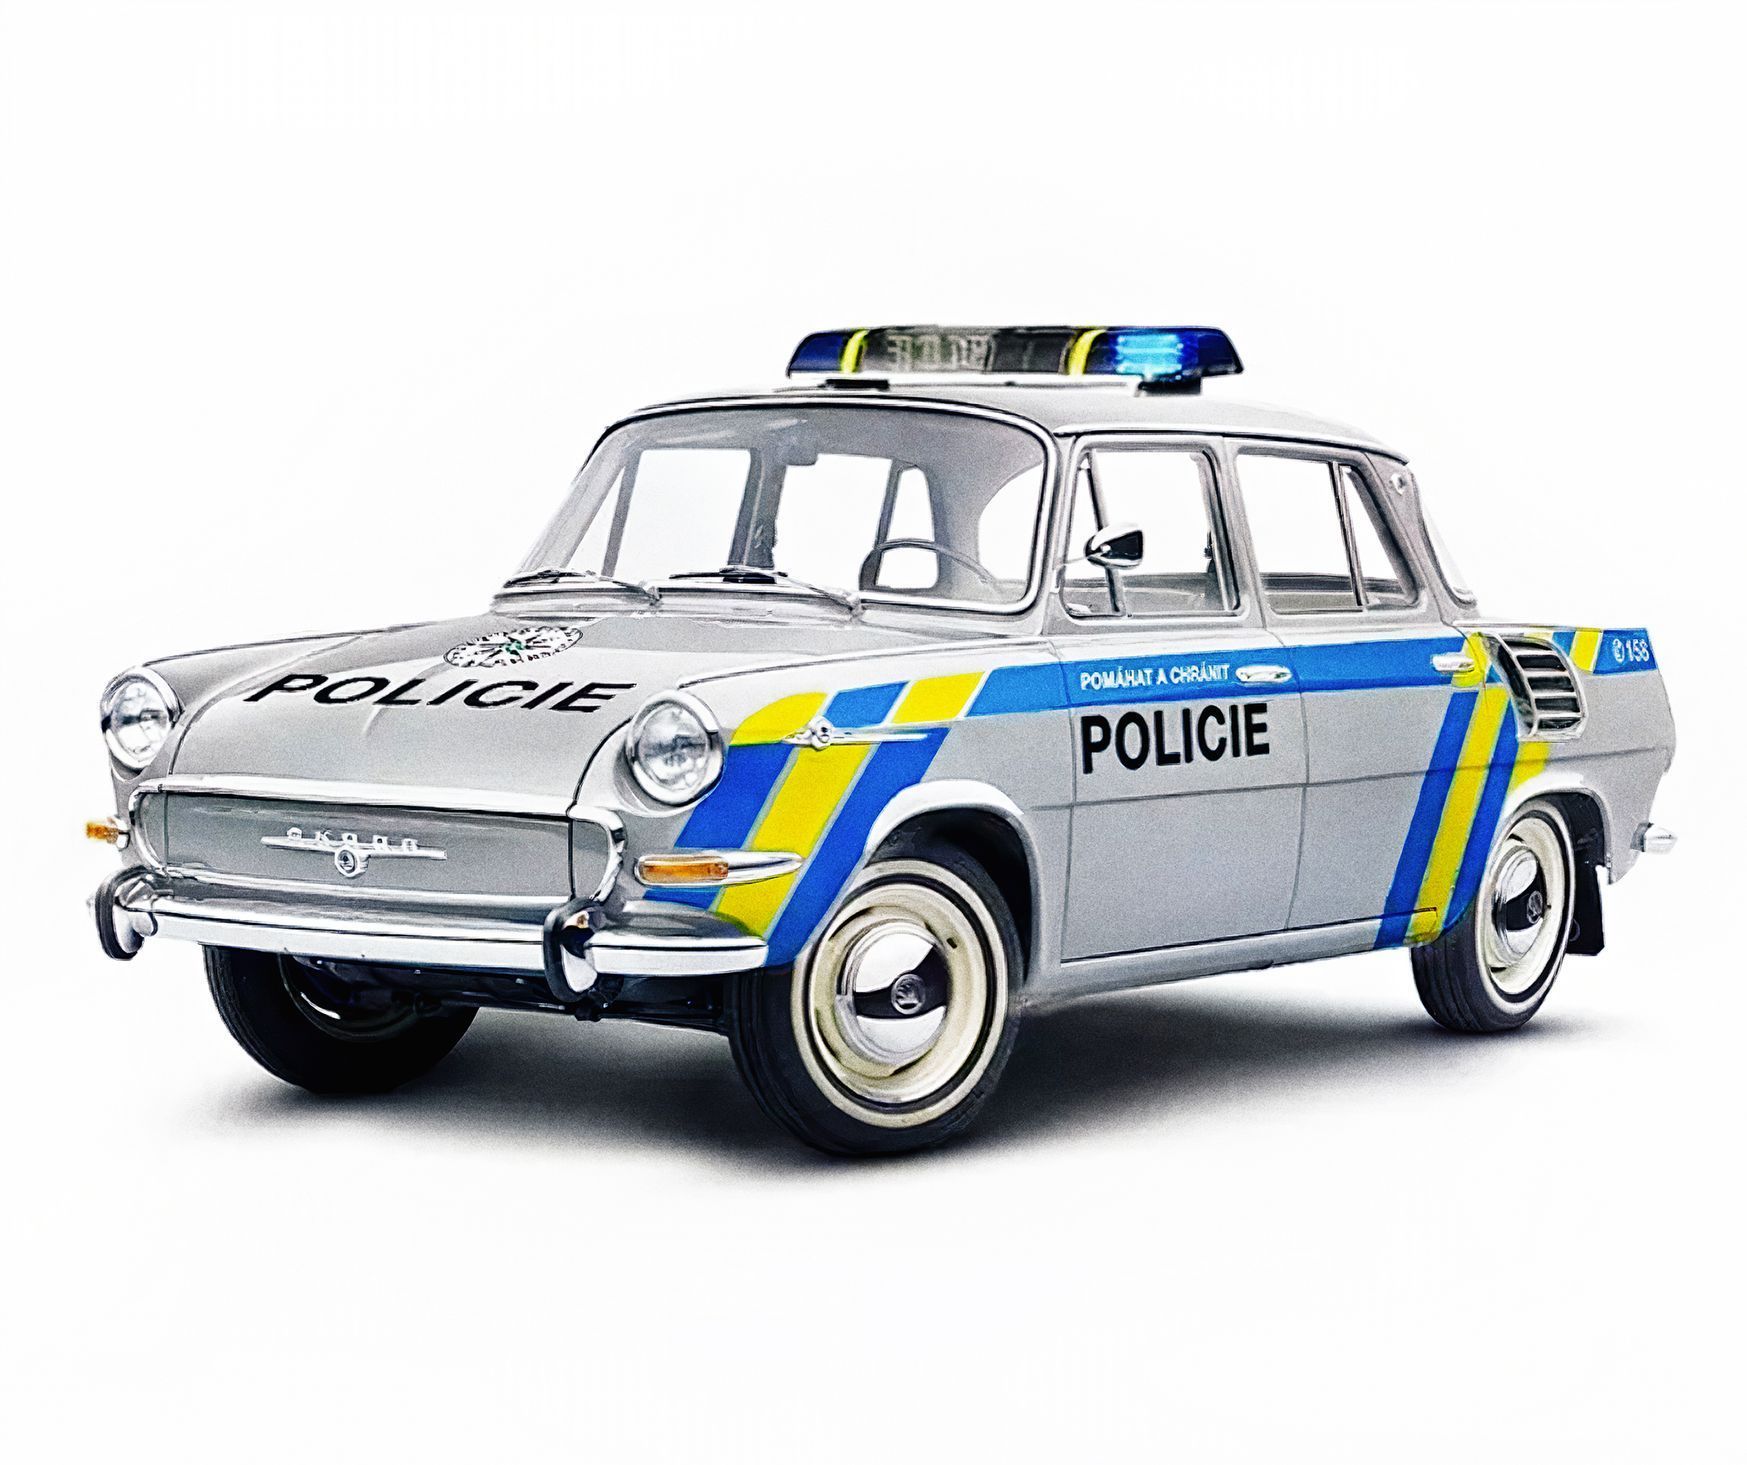 Policejní retro cesta do minulosti: Trabant i žigulík v moderních